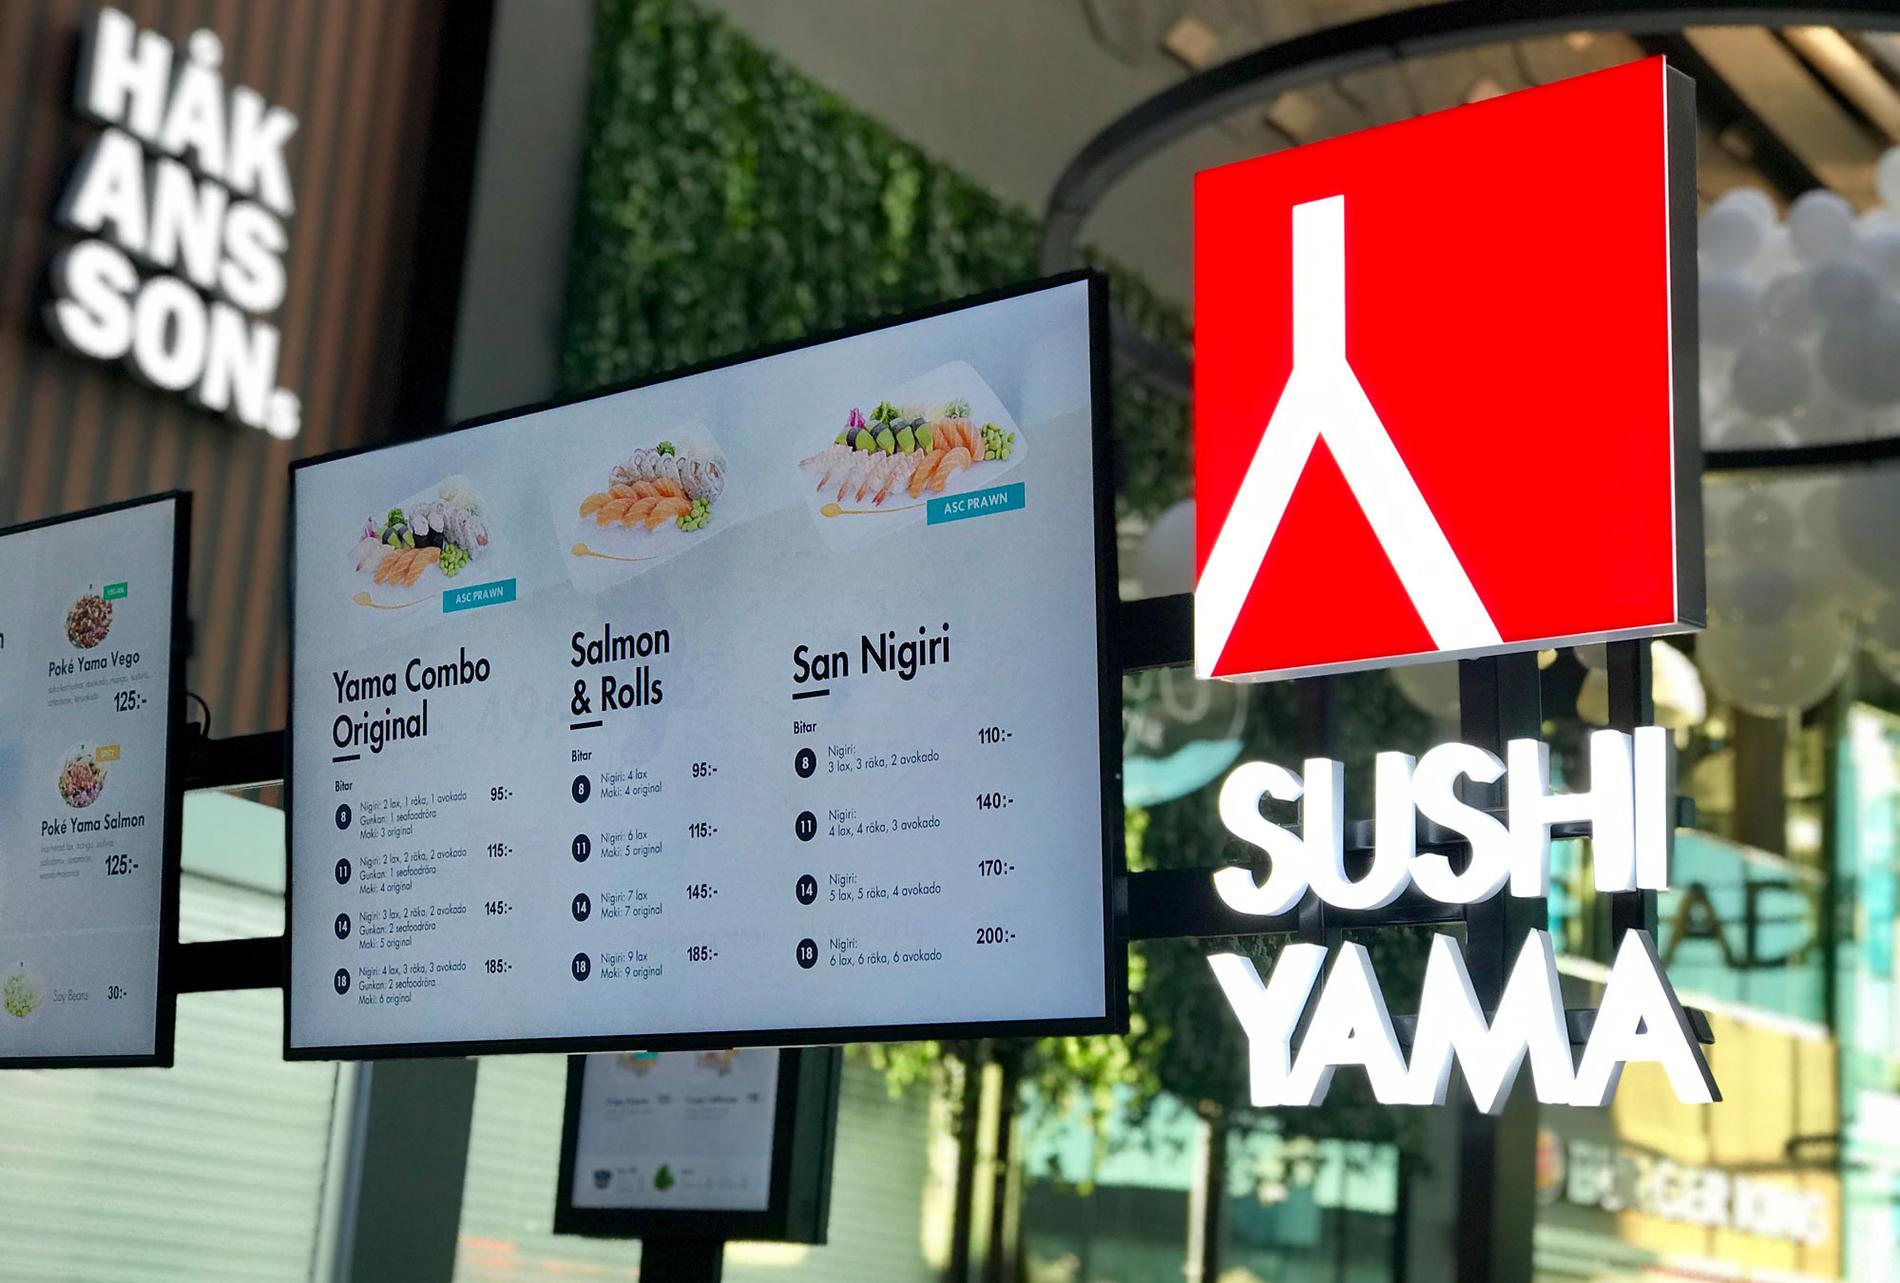 Anställda på Sushi Yama vittnar om långa arbetspass, obetalda timmar och bestraffningar, enligt en granskning i tidningen Arbetet.